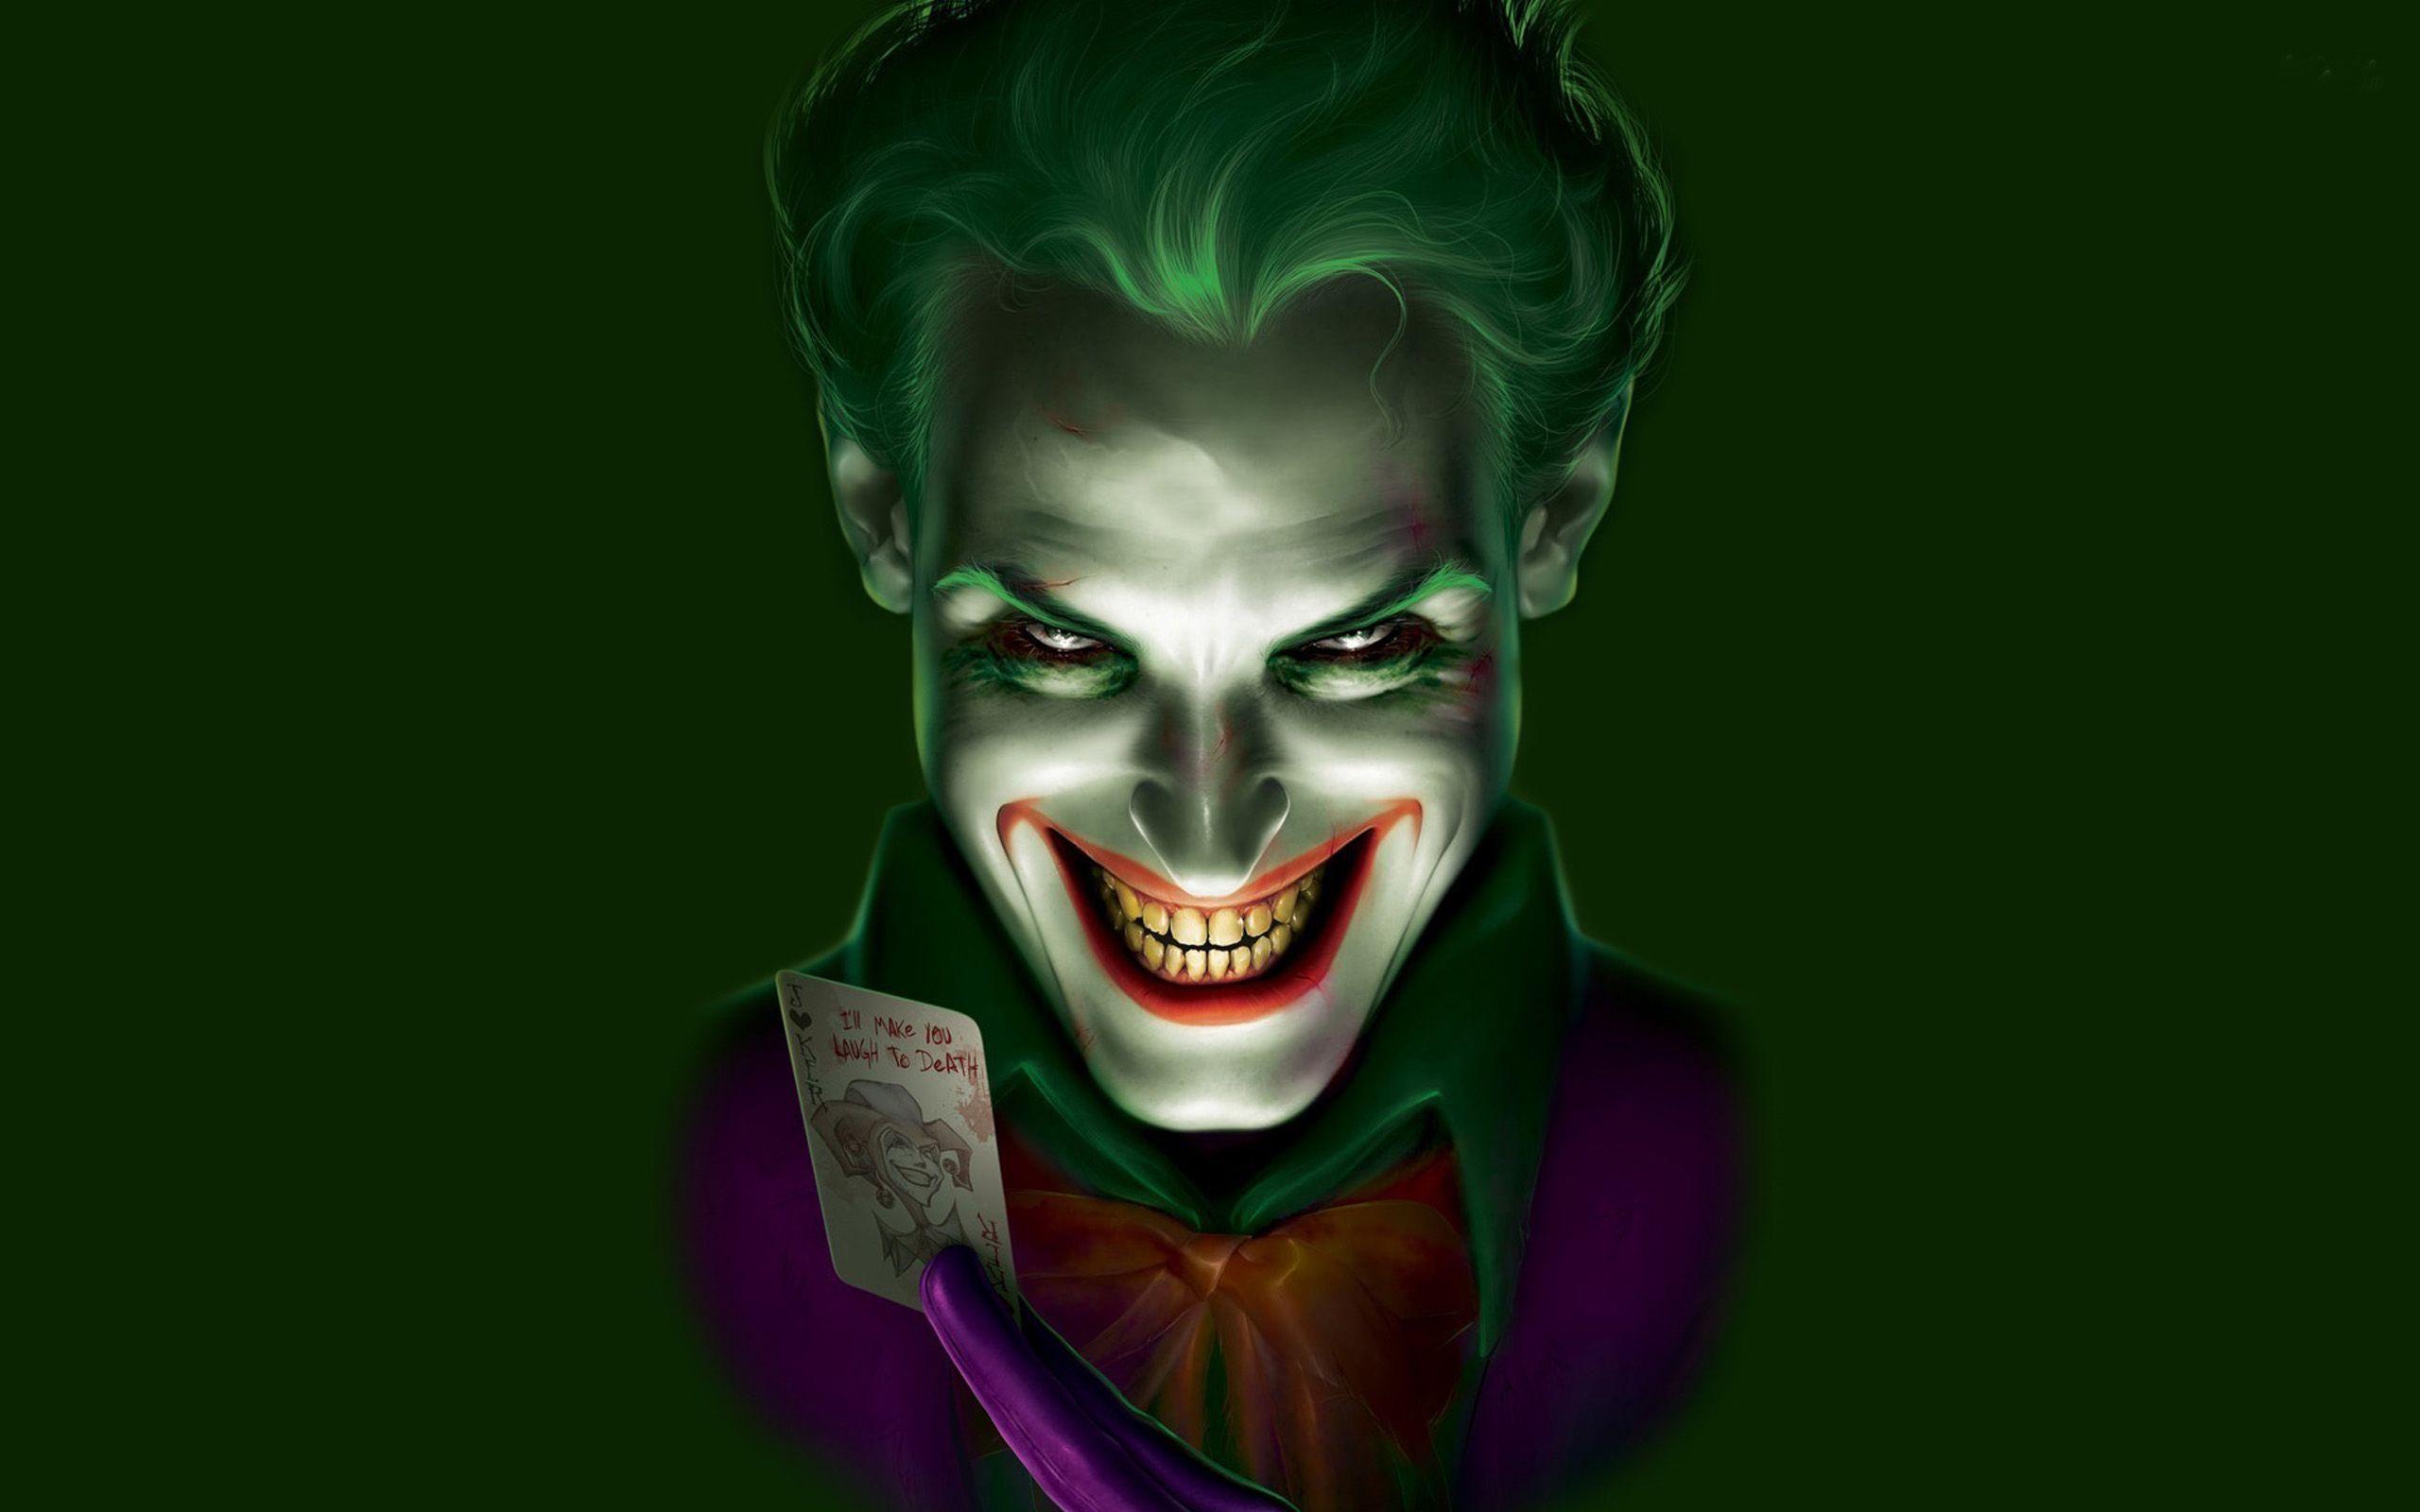 Hướng Dẫn Vẽ Joker Đơn Giản  How To Draw Joker  Hướng Dẫn Tô Màu Joker   Joker Cute 2020  YouTube